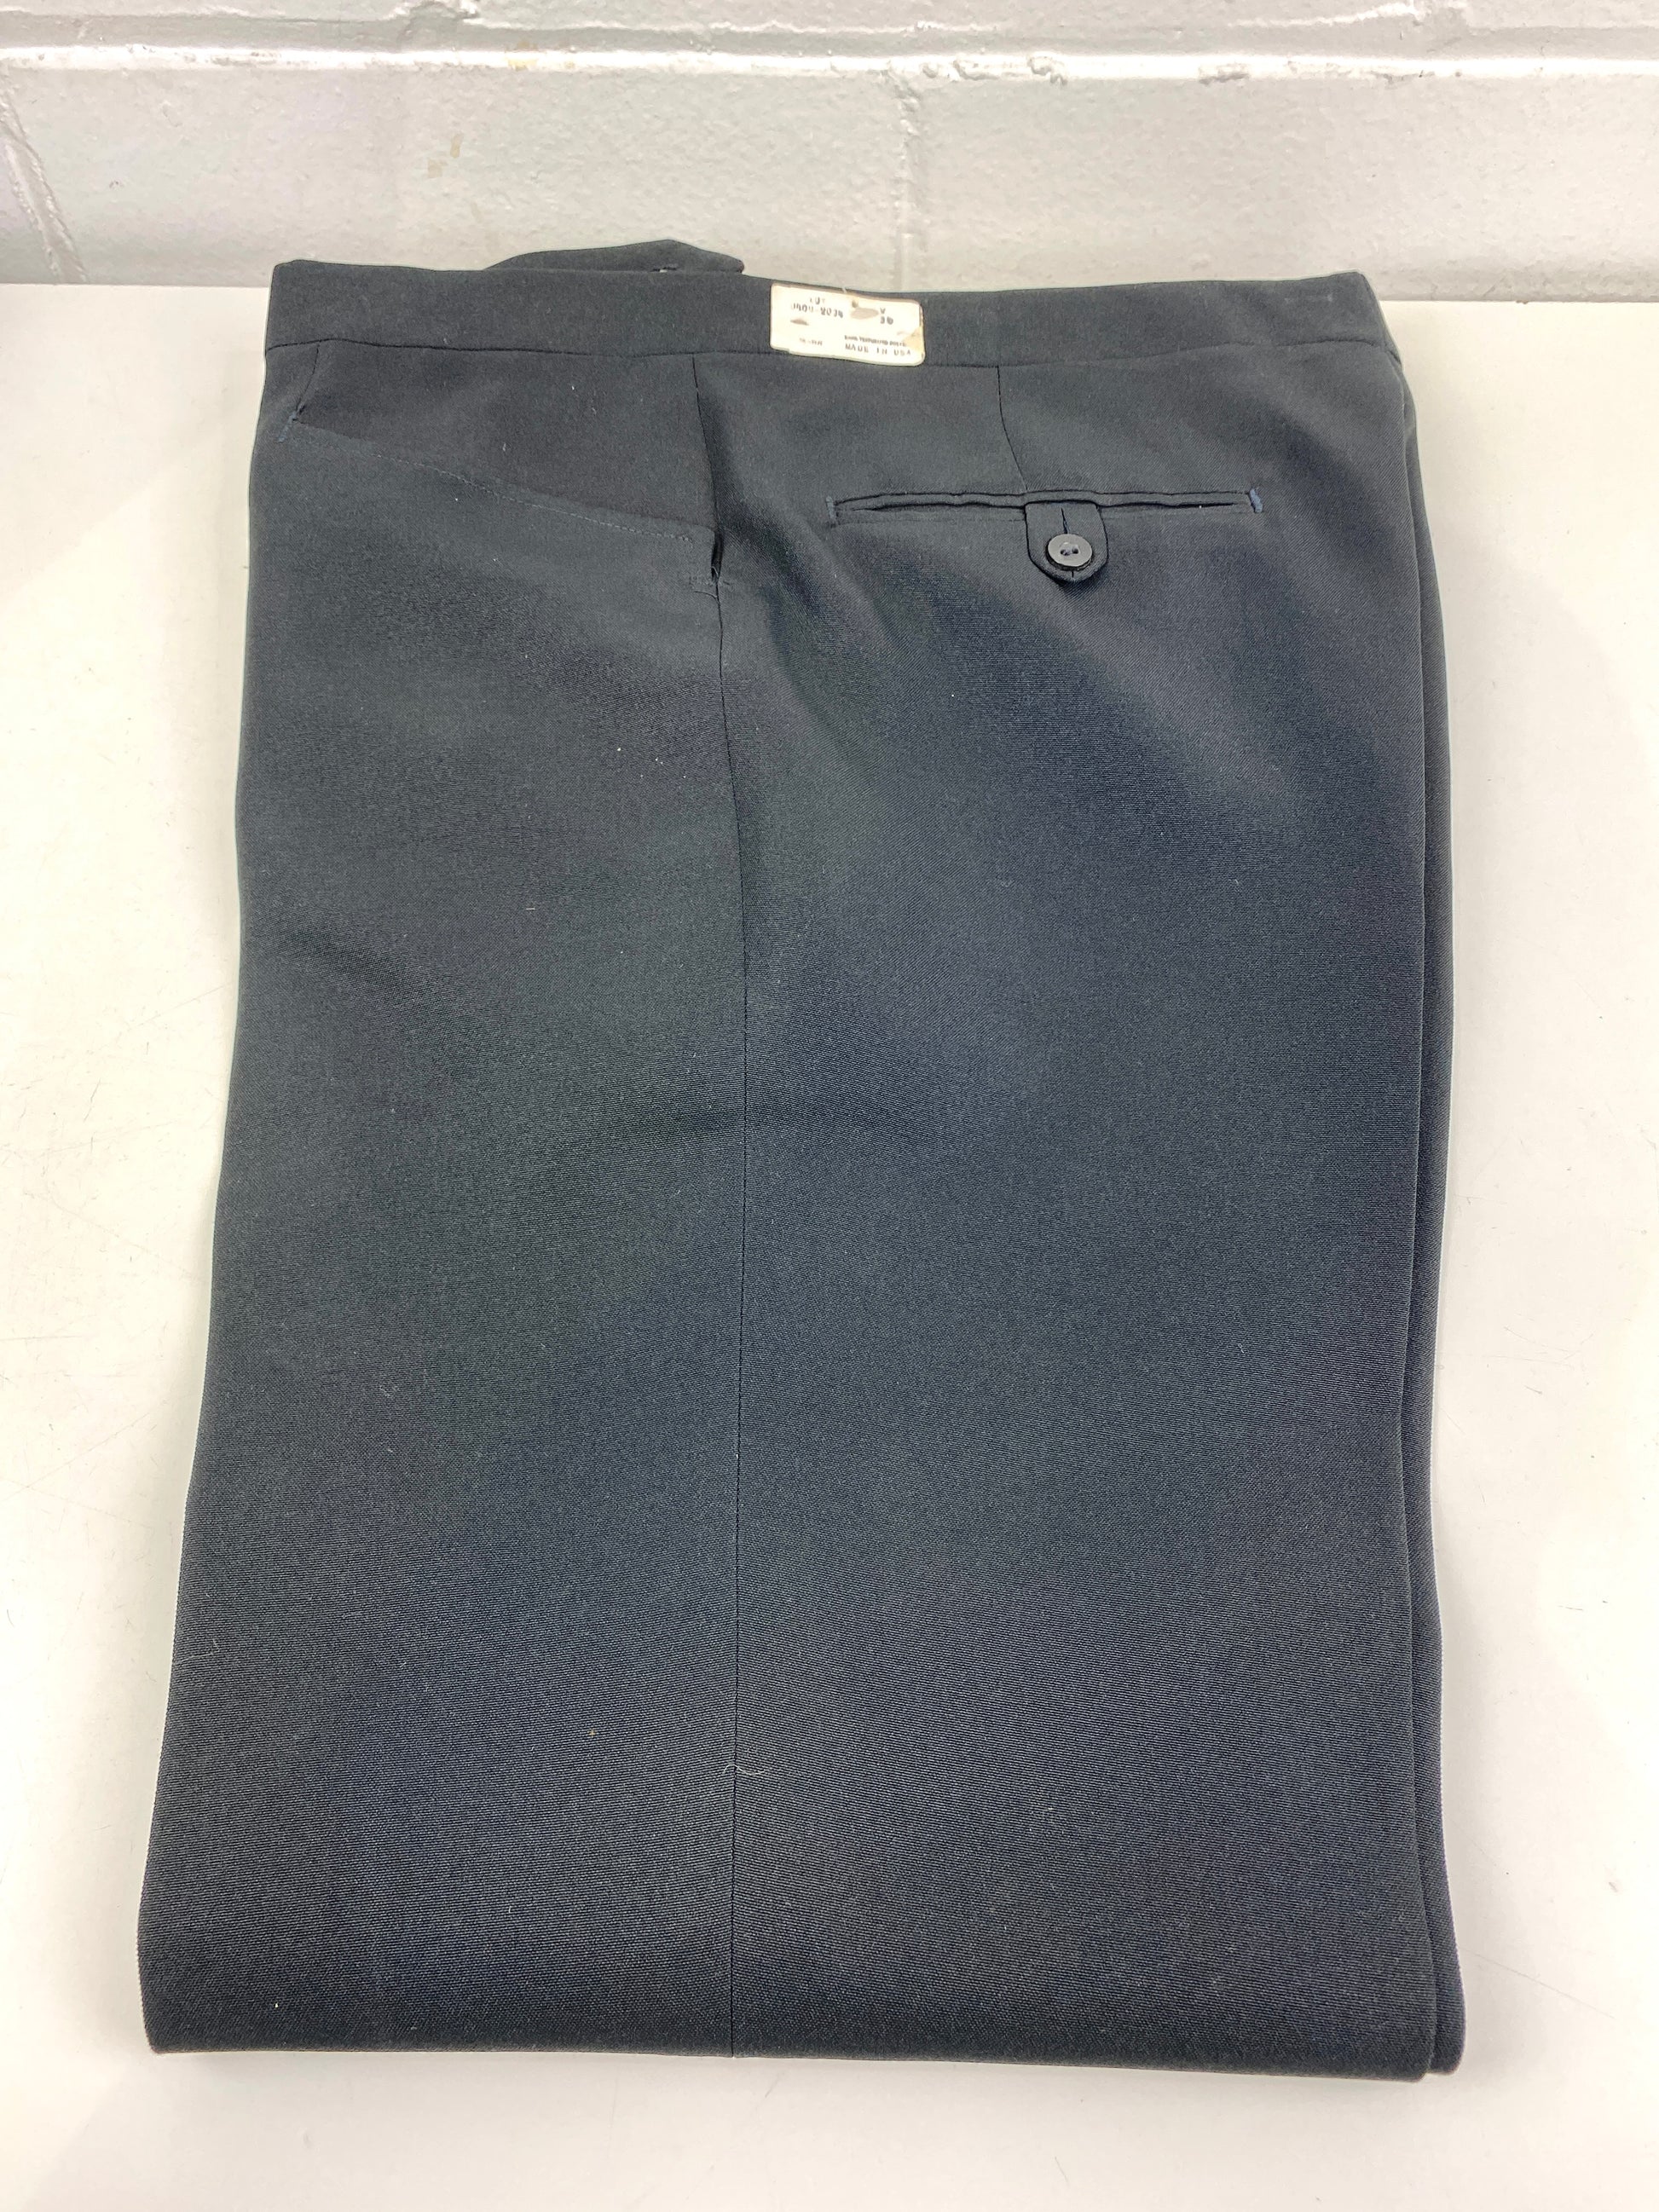 Vintage 1970s Deadstock Polyester Straight Trousers, Men's Black Slacks, NOS